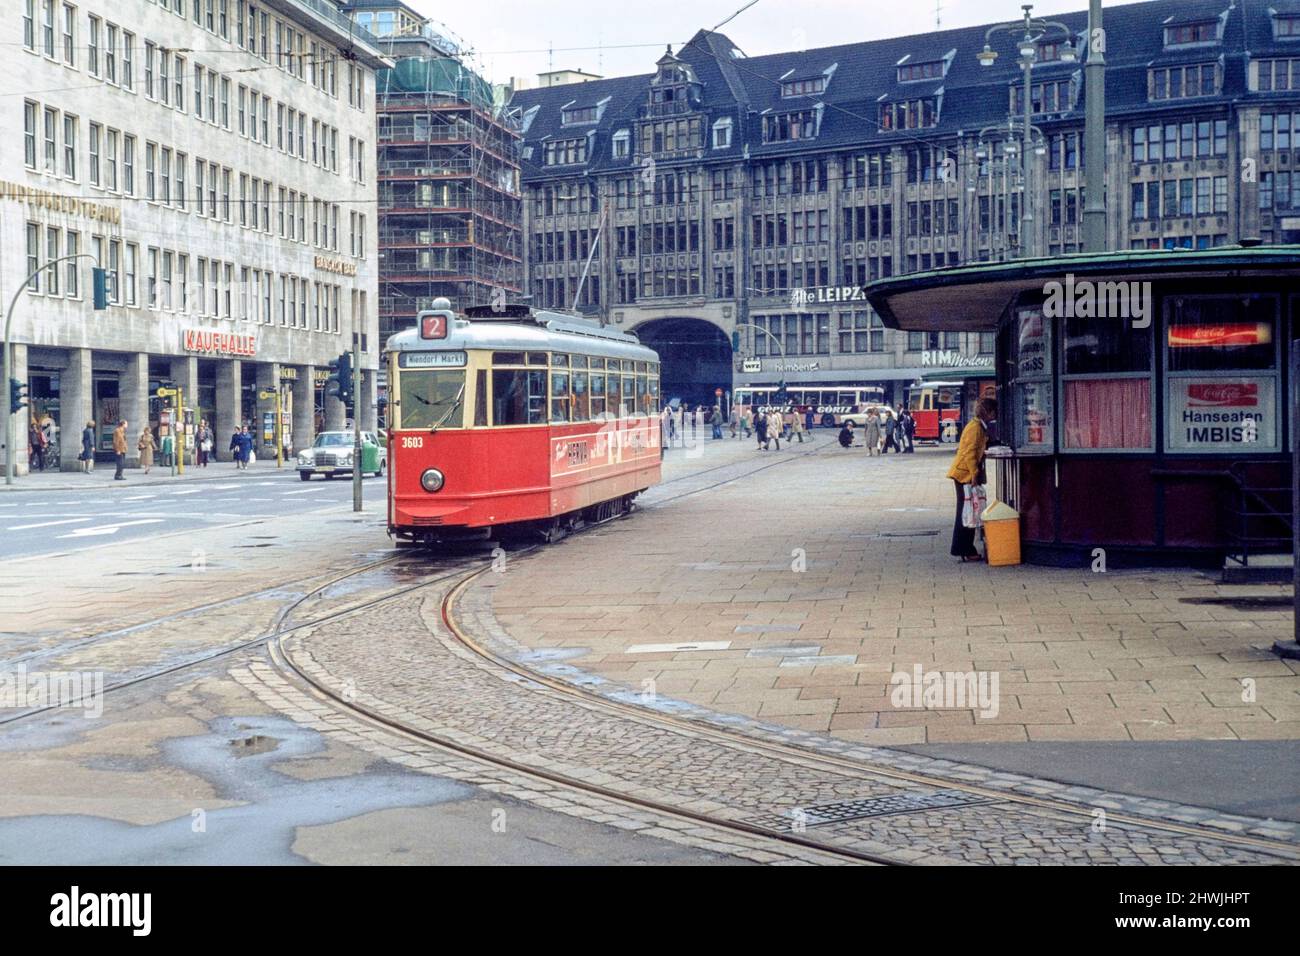 tranvía clásico en servicio alrededor de 1980 hamburgo alemania Foto de stock